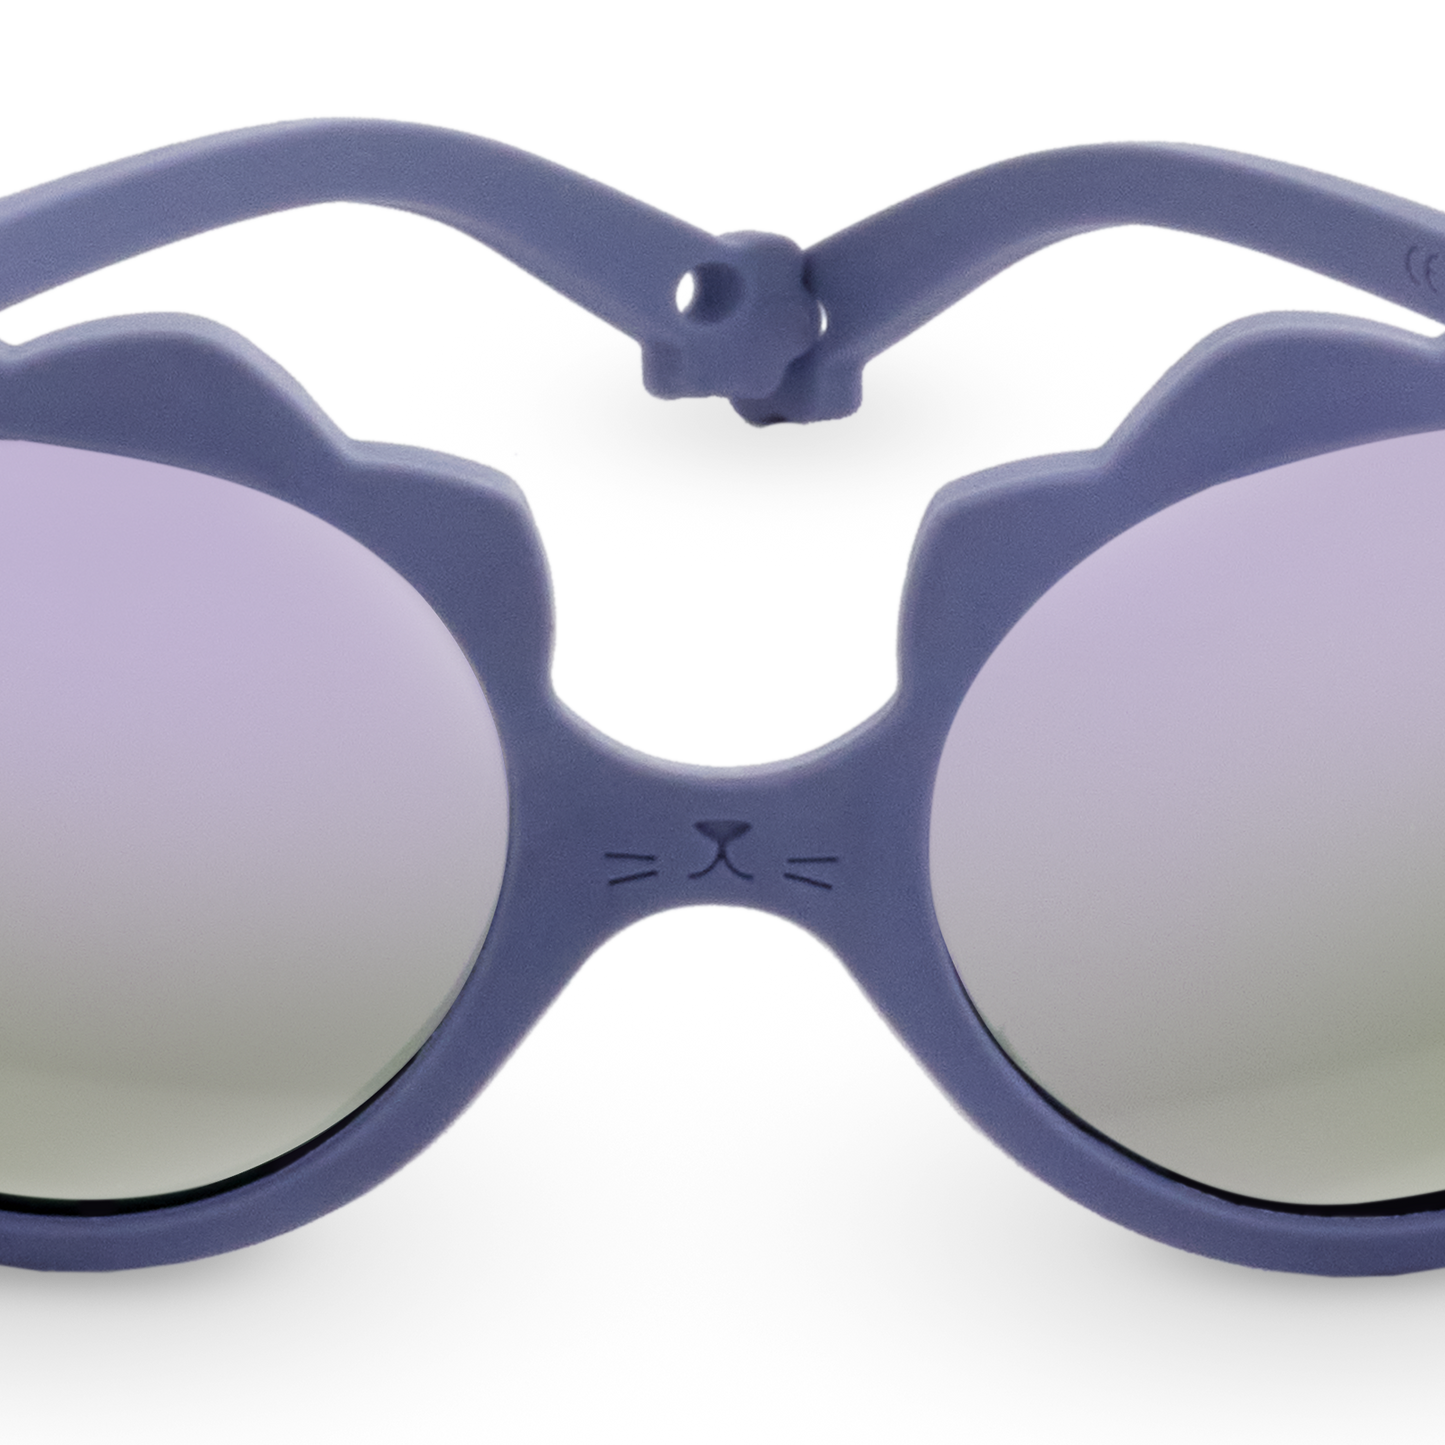 Okulary przeciwsłoneczne Lion 2-4 Lilac Ki ET LA